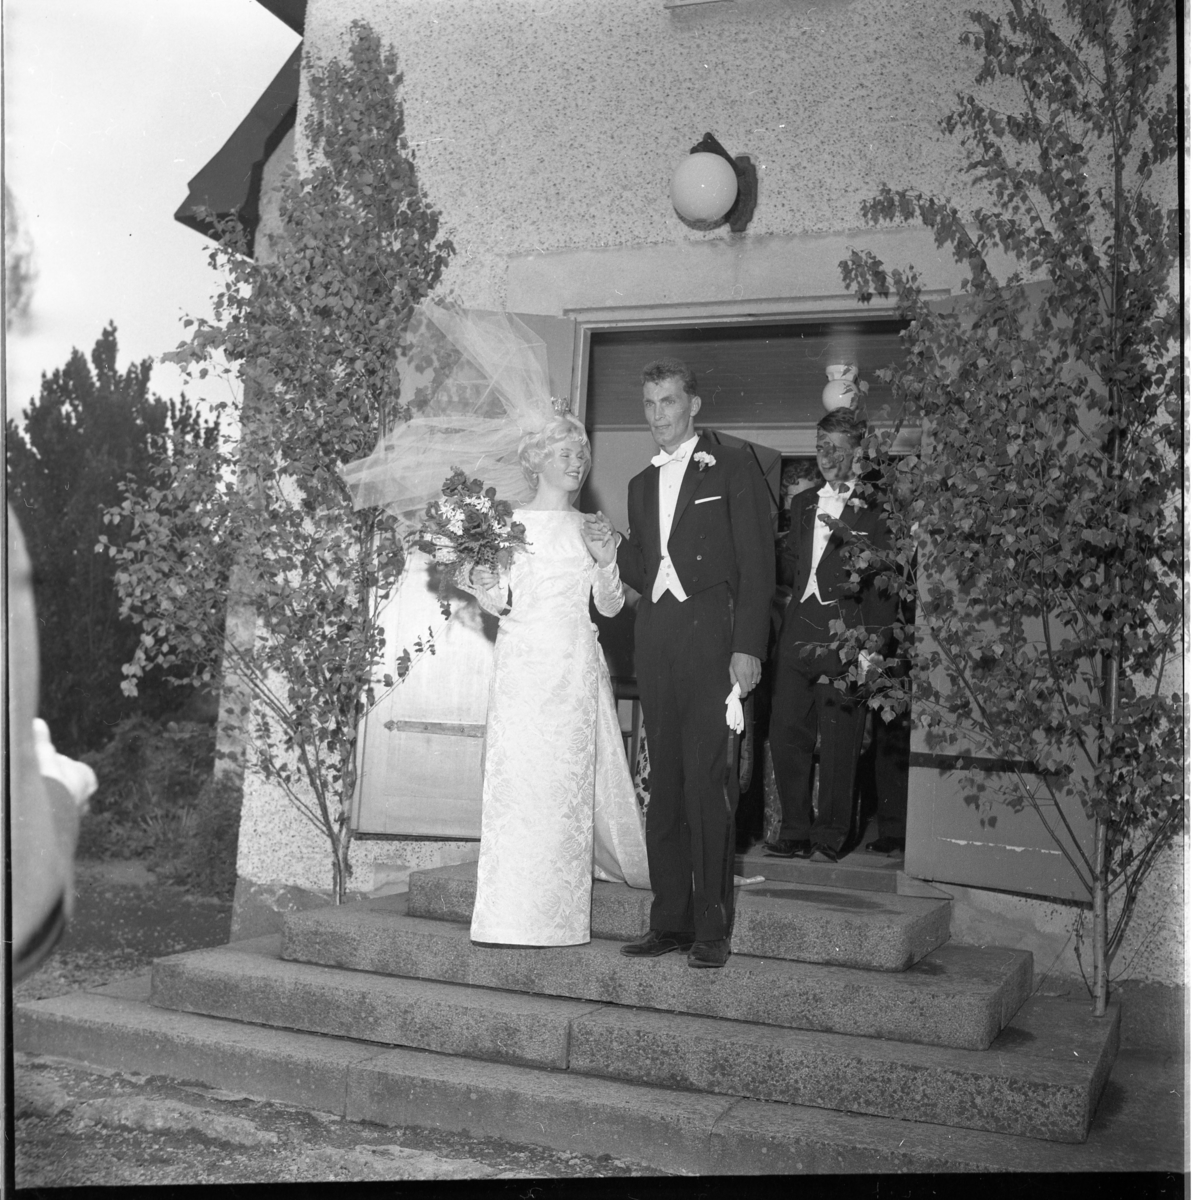 Nygifta Rolf Nilsson och Lisbeth Johansson utanför Örserums kyrka. Vinden sliter i brudslöjan.